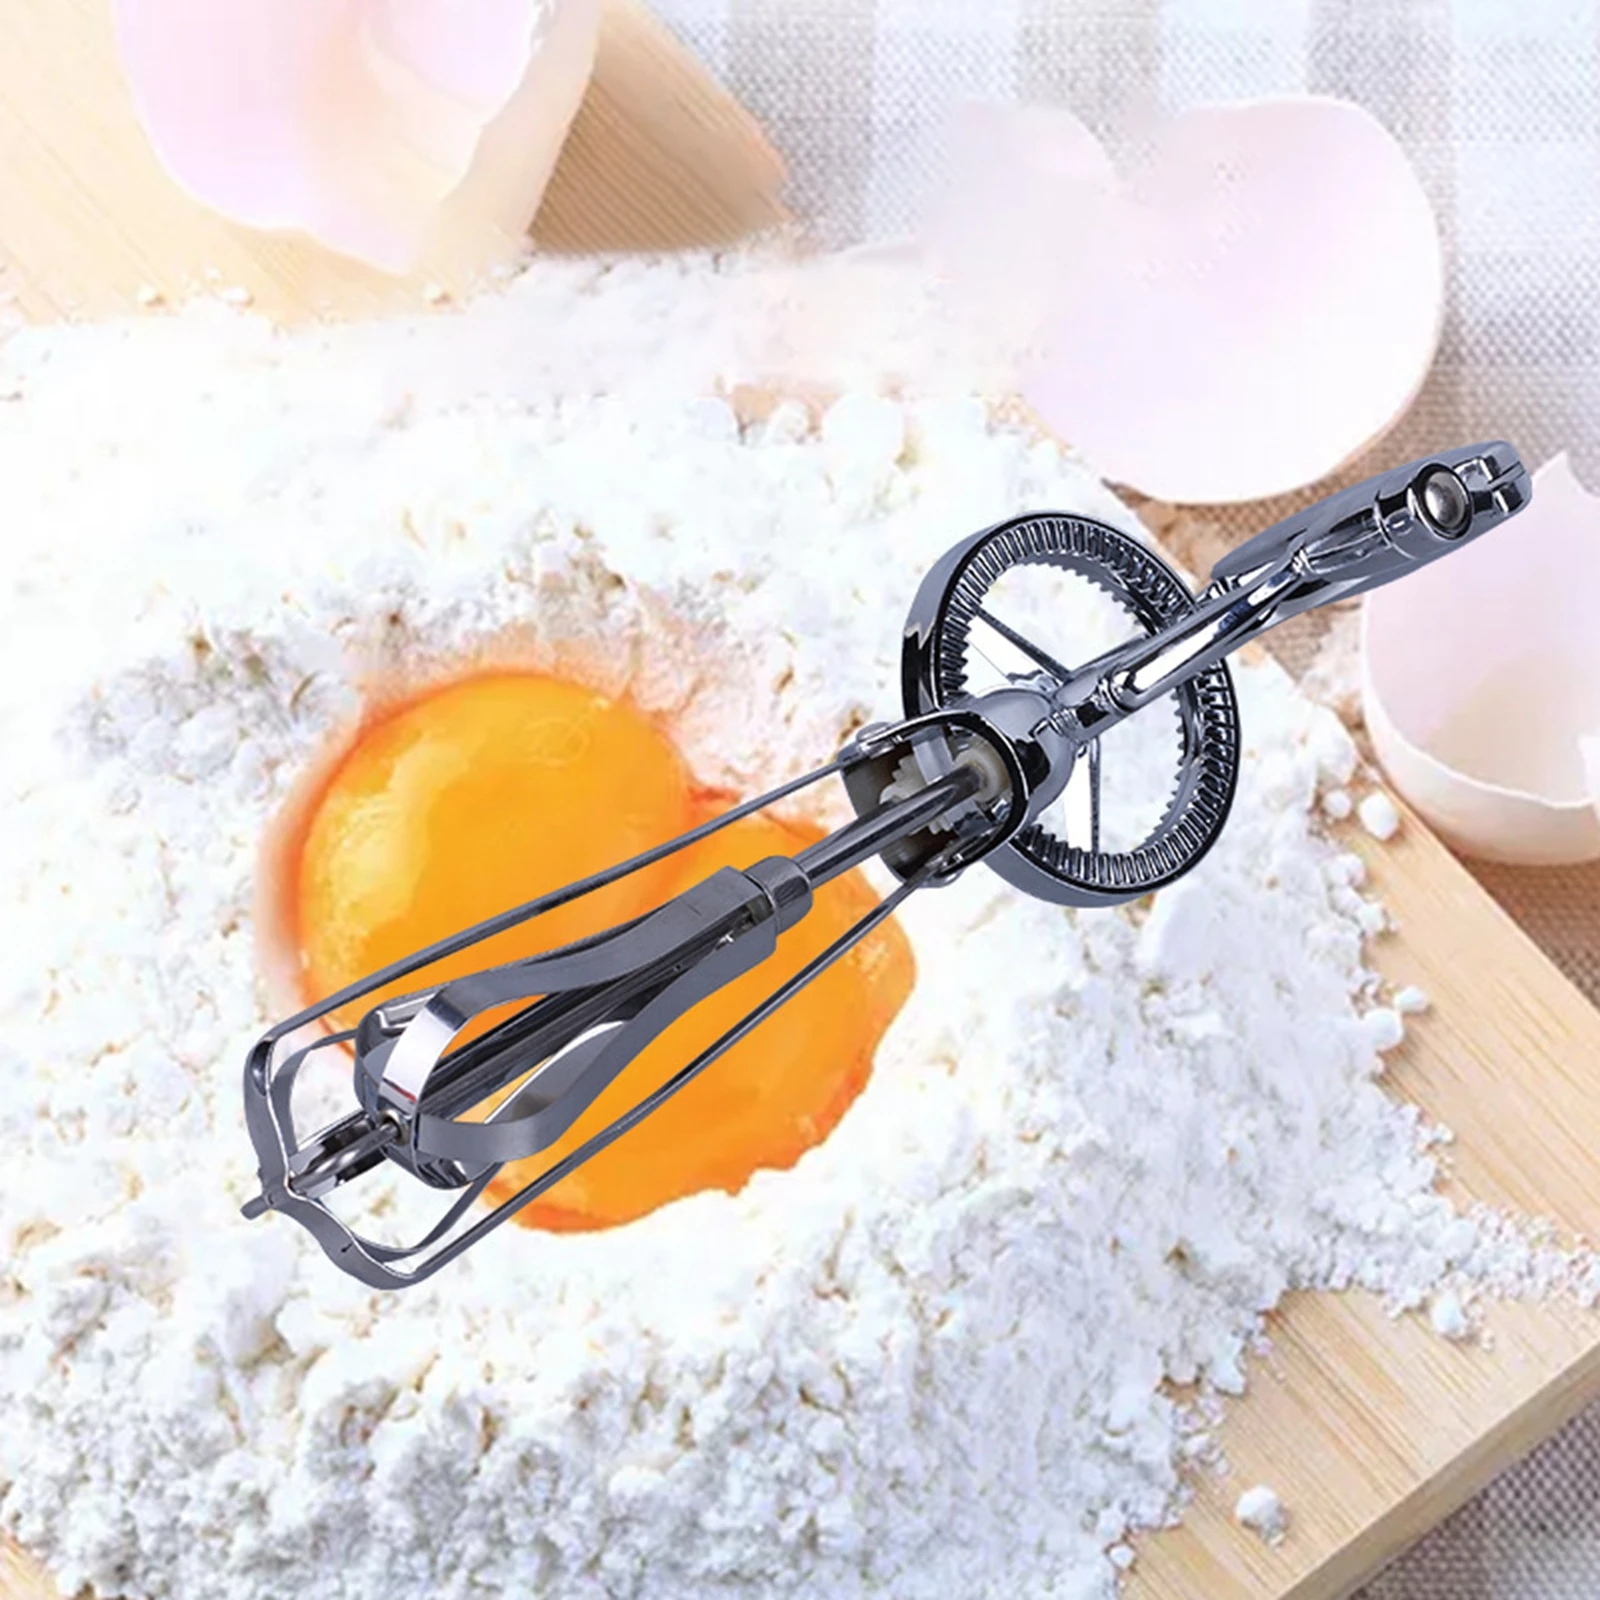 

Венчик для яиц из нержавеющей стали, ручная рукоятка, стильные Инструменты для выпечки, кухонные аксессуары, ручной миксер для домашней кух...